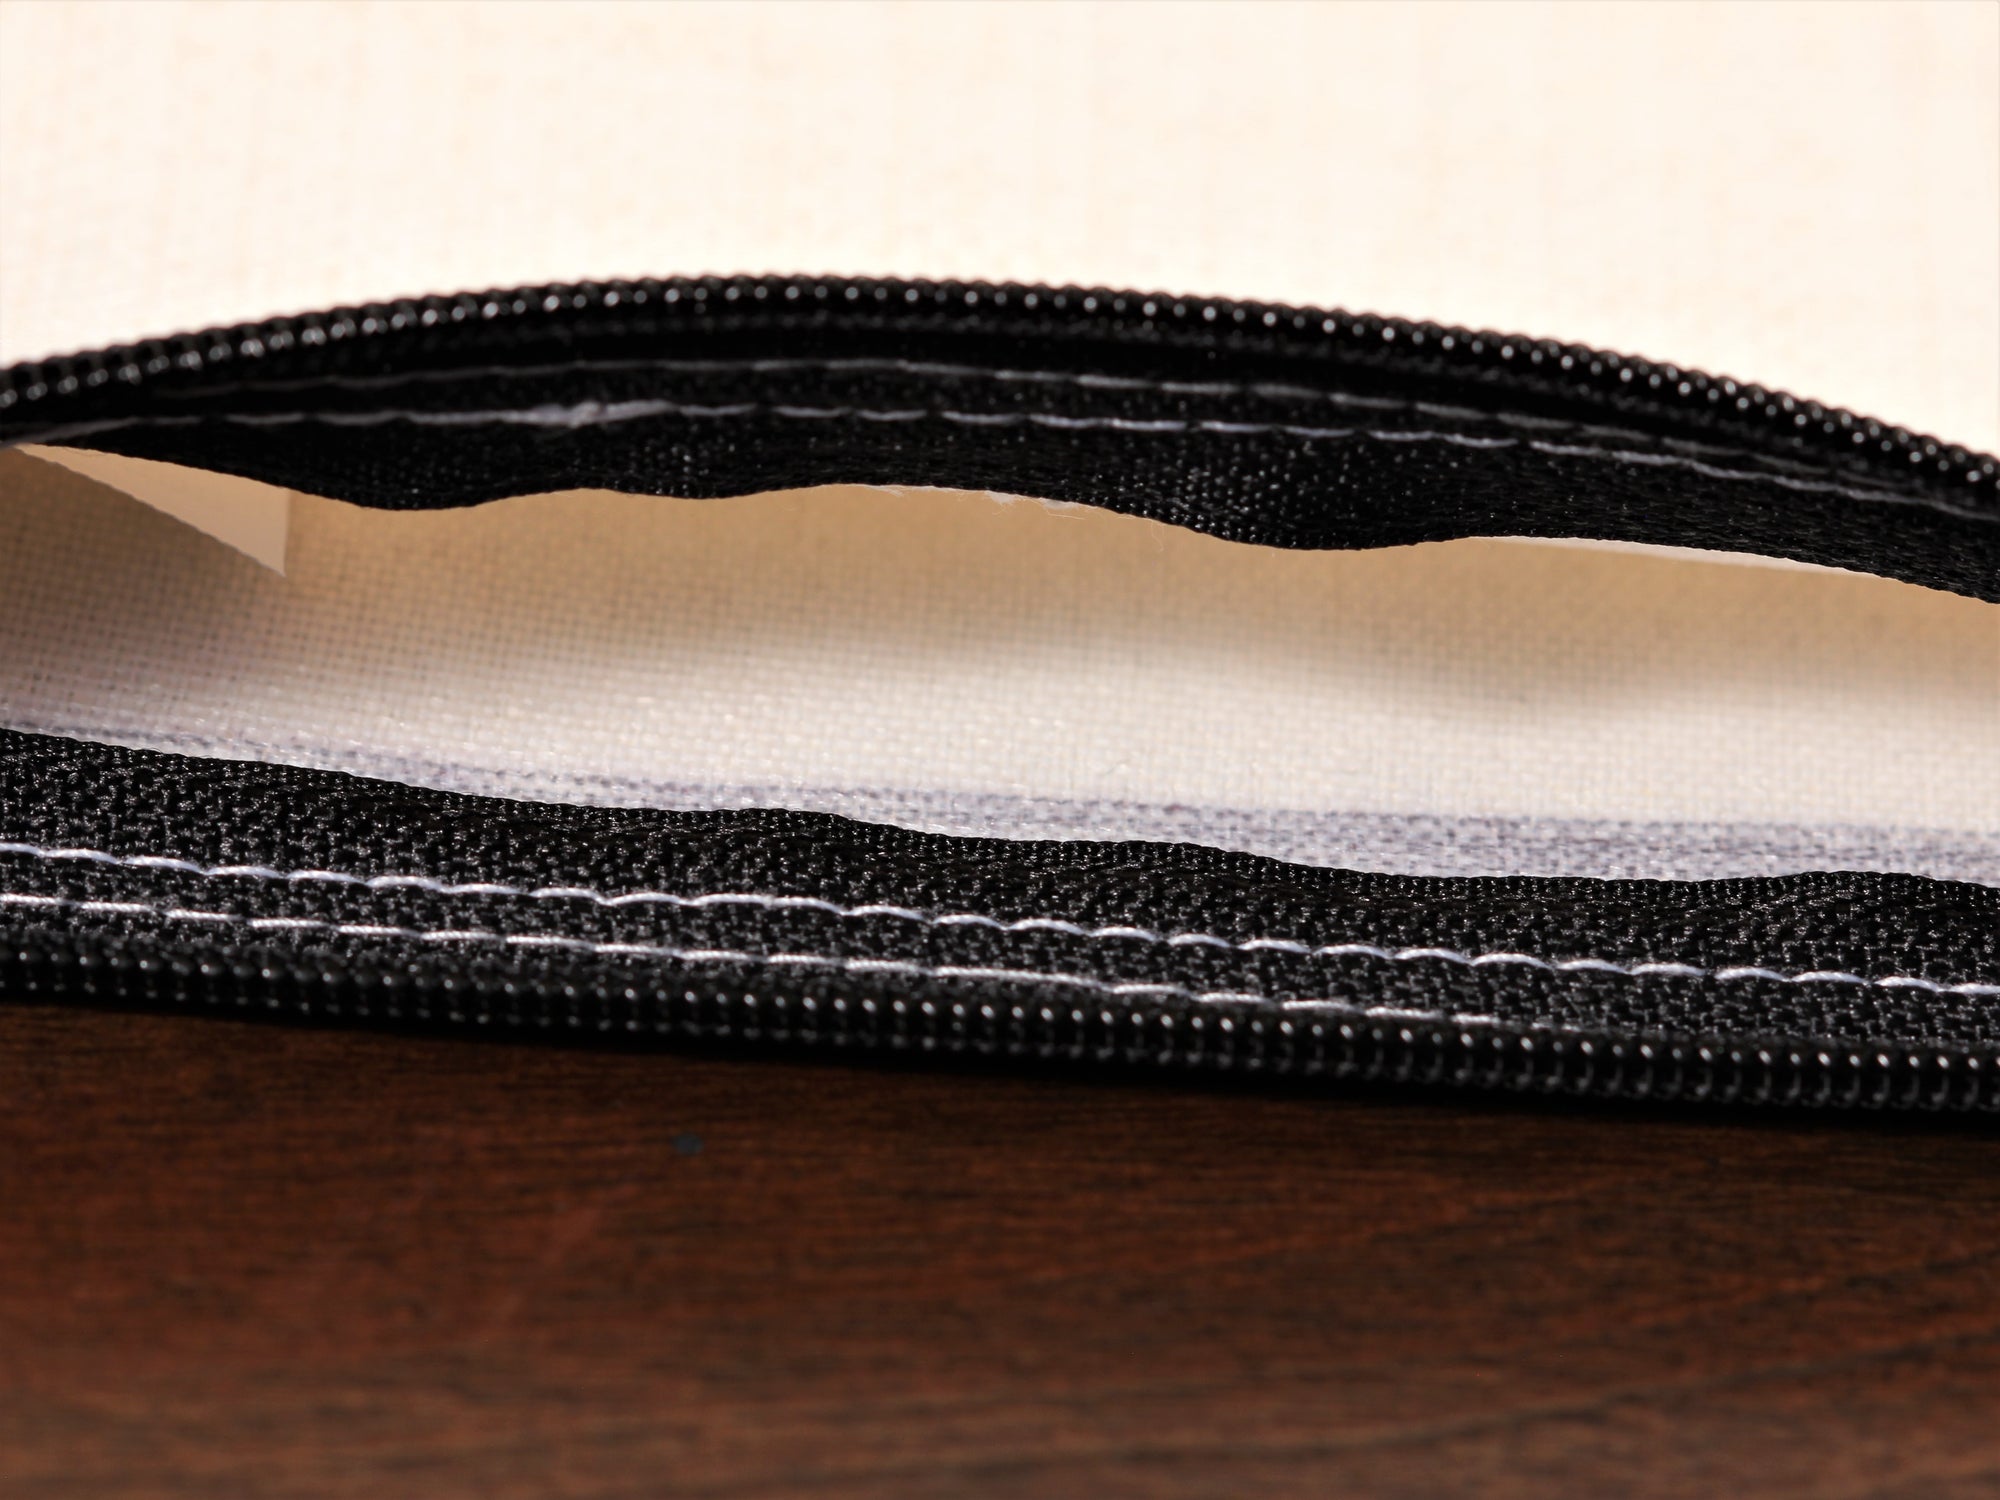 Blank/Customizable Linen Zippered Bag (Coin Purse)